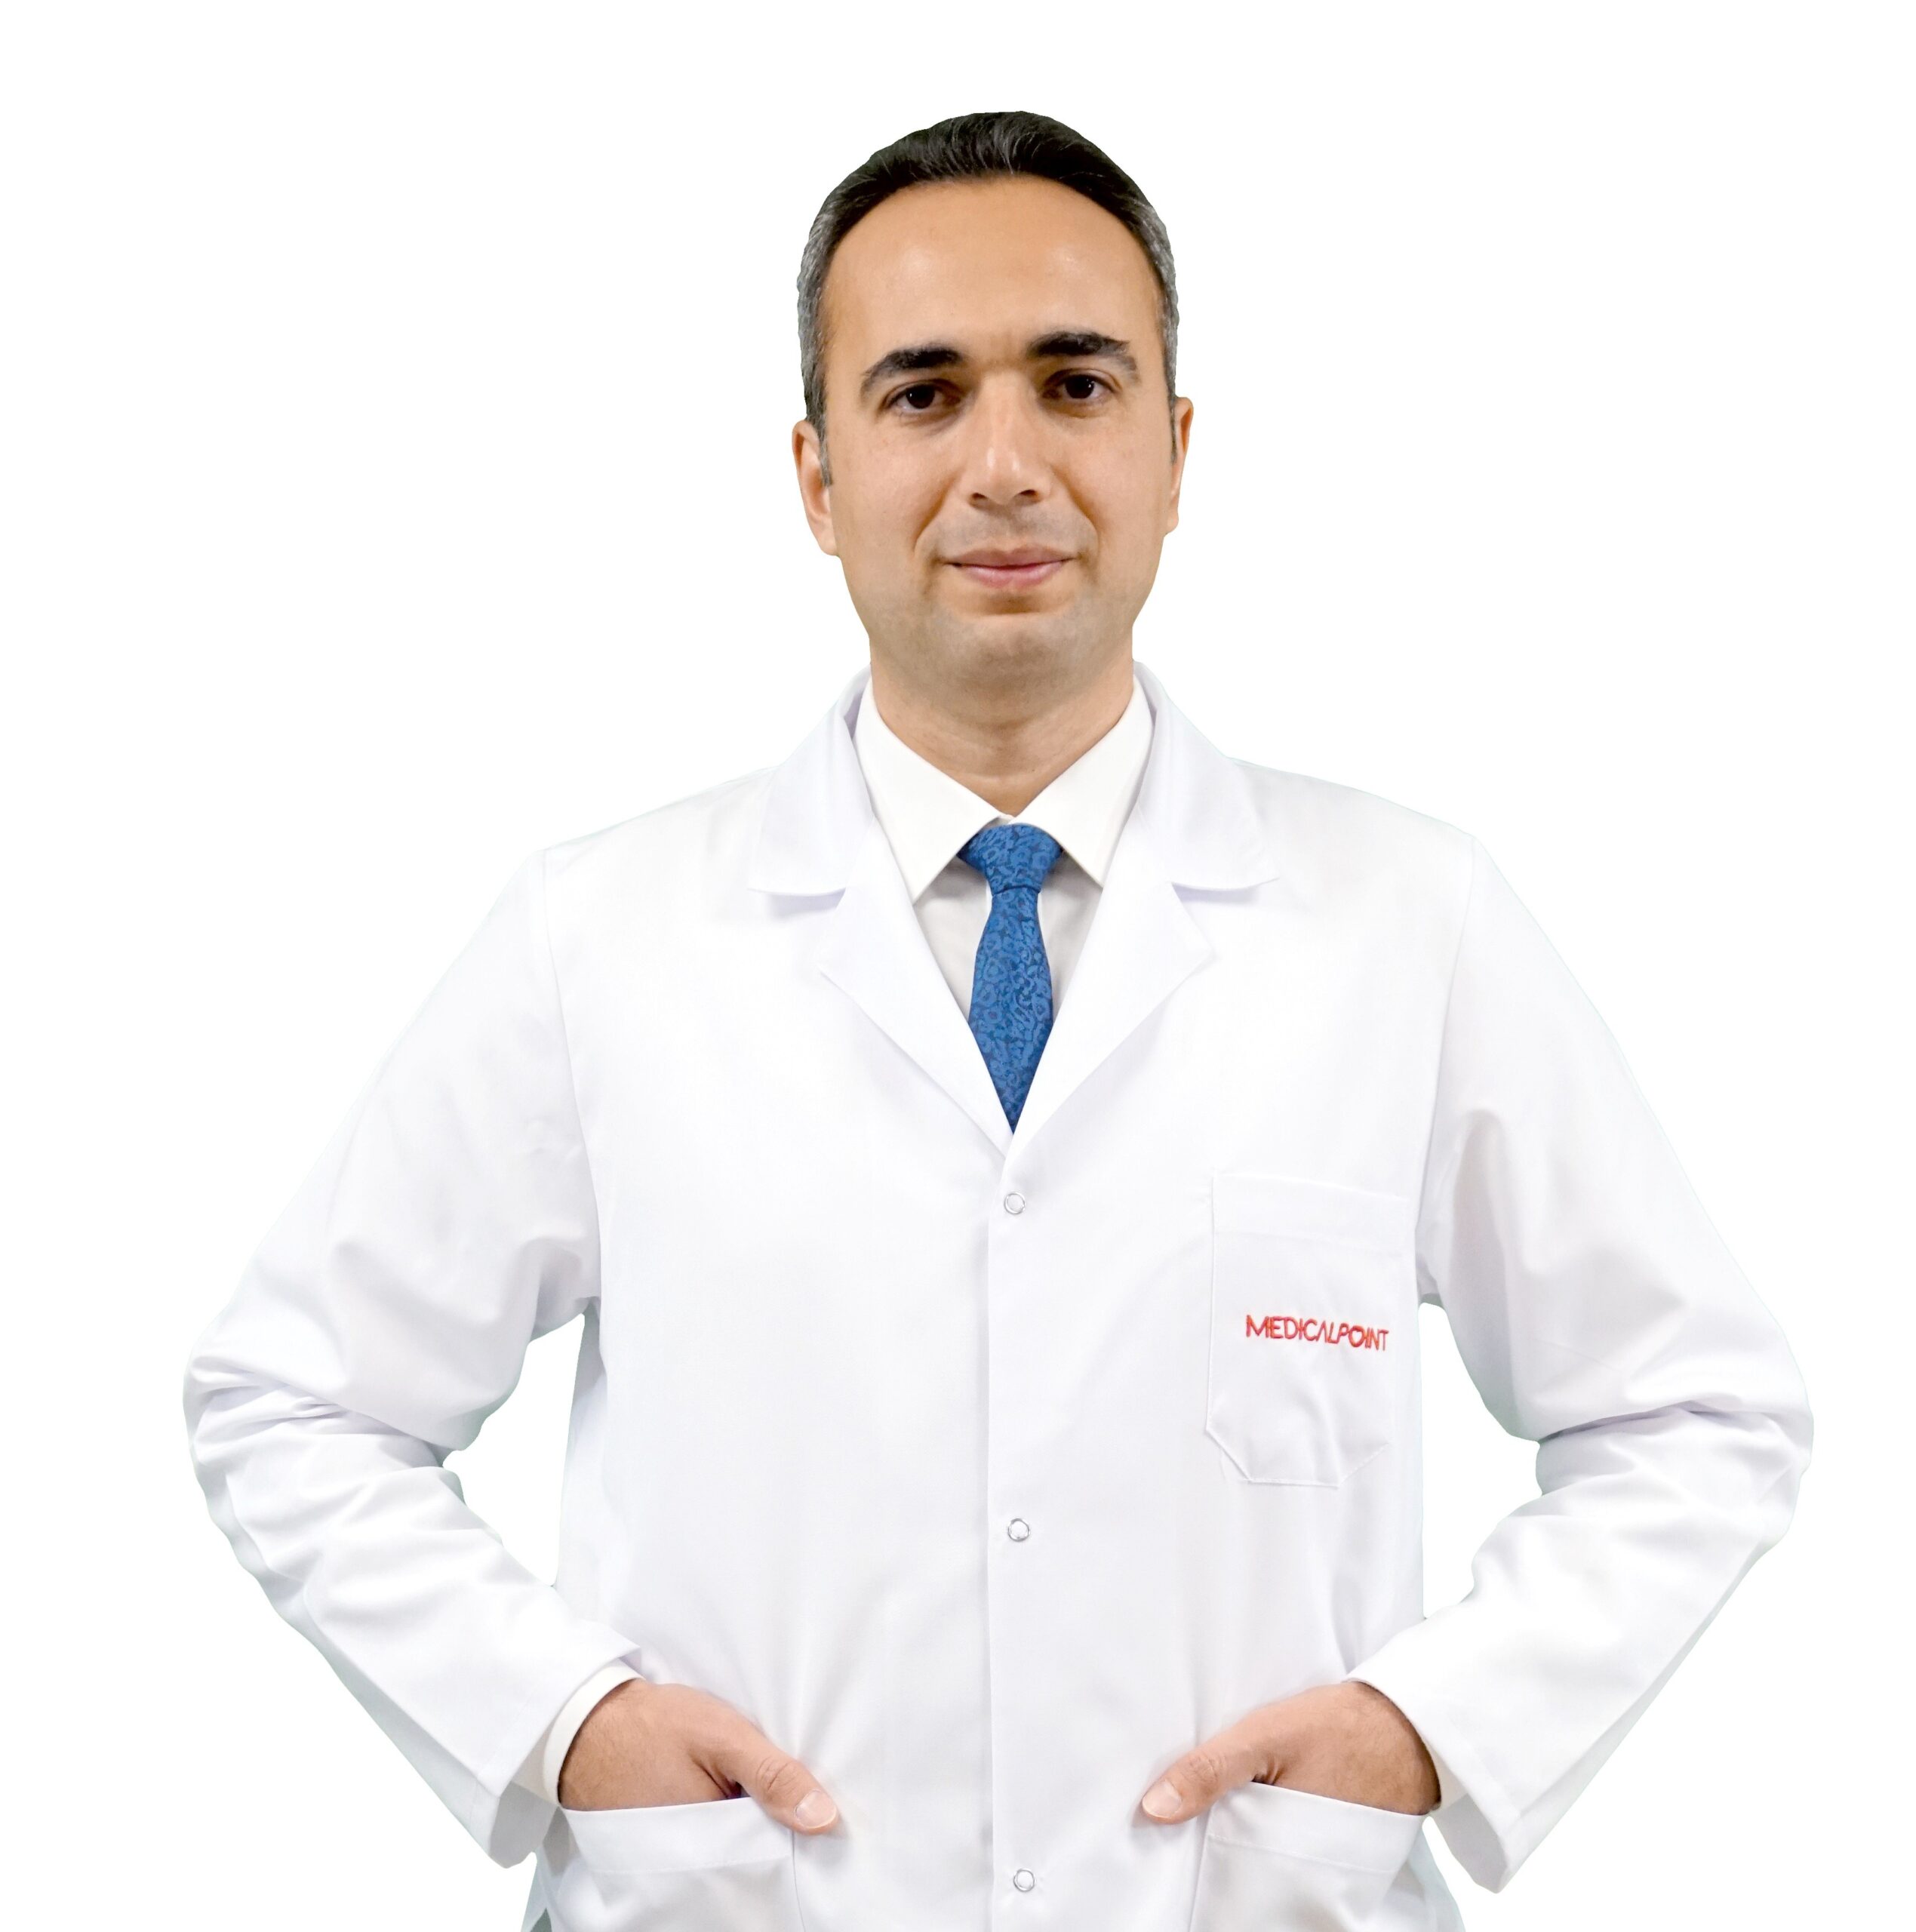 Doç. Dr. Yavuzer Medical Point Gaziantep’te